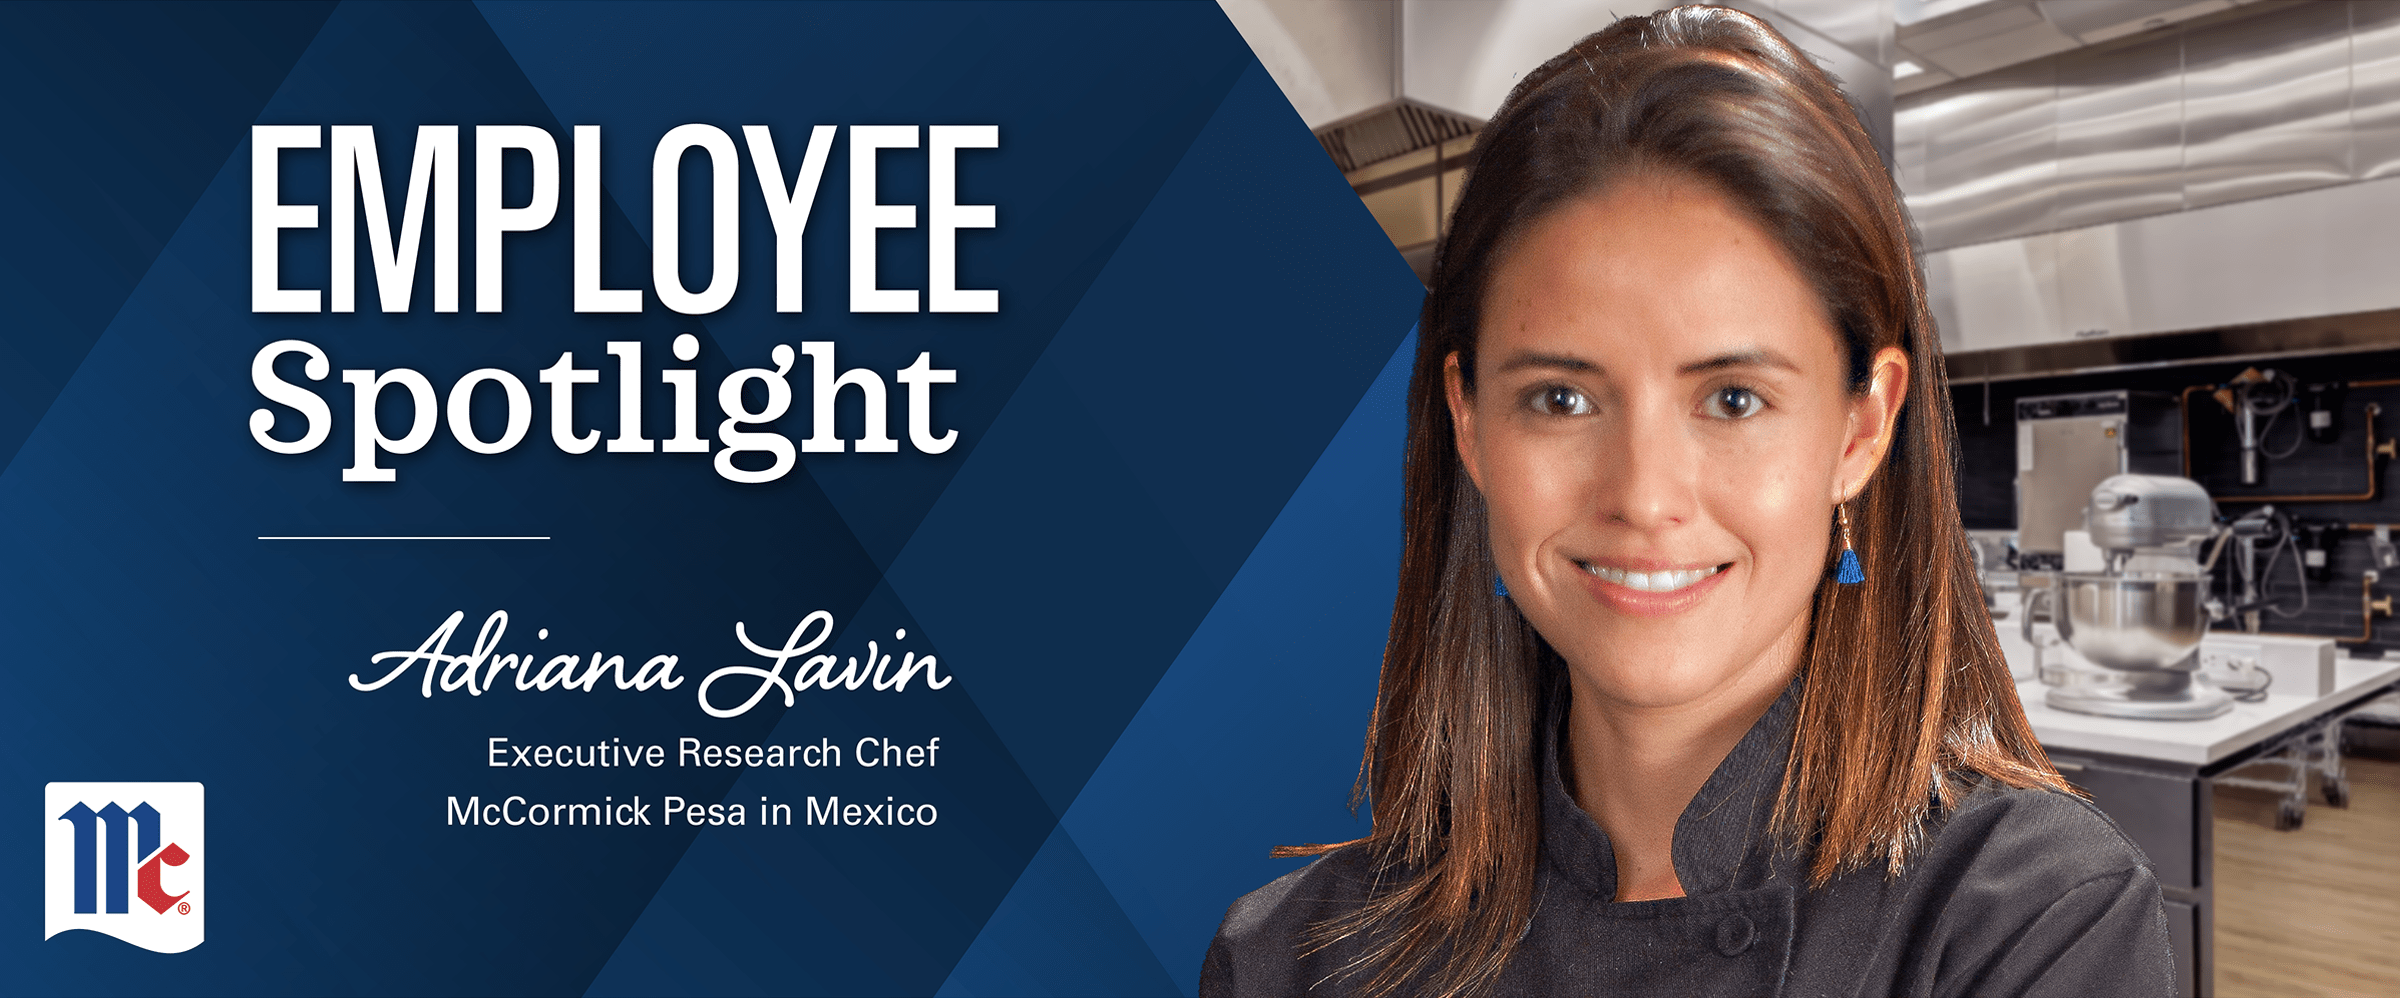 Executive Research Chef Adriana Lavin